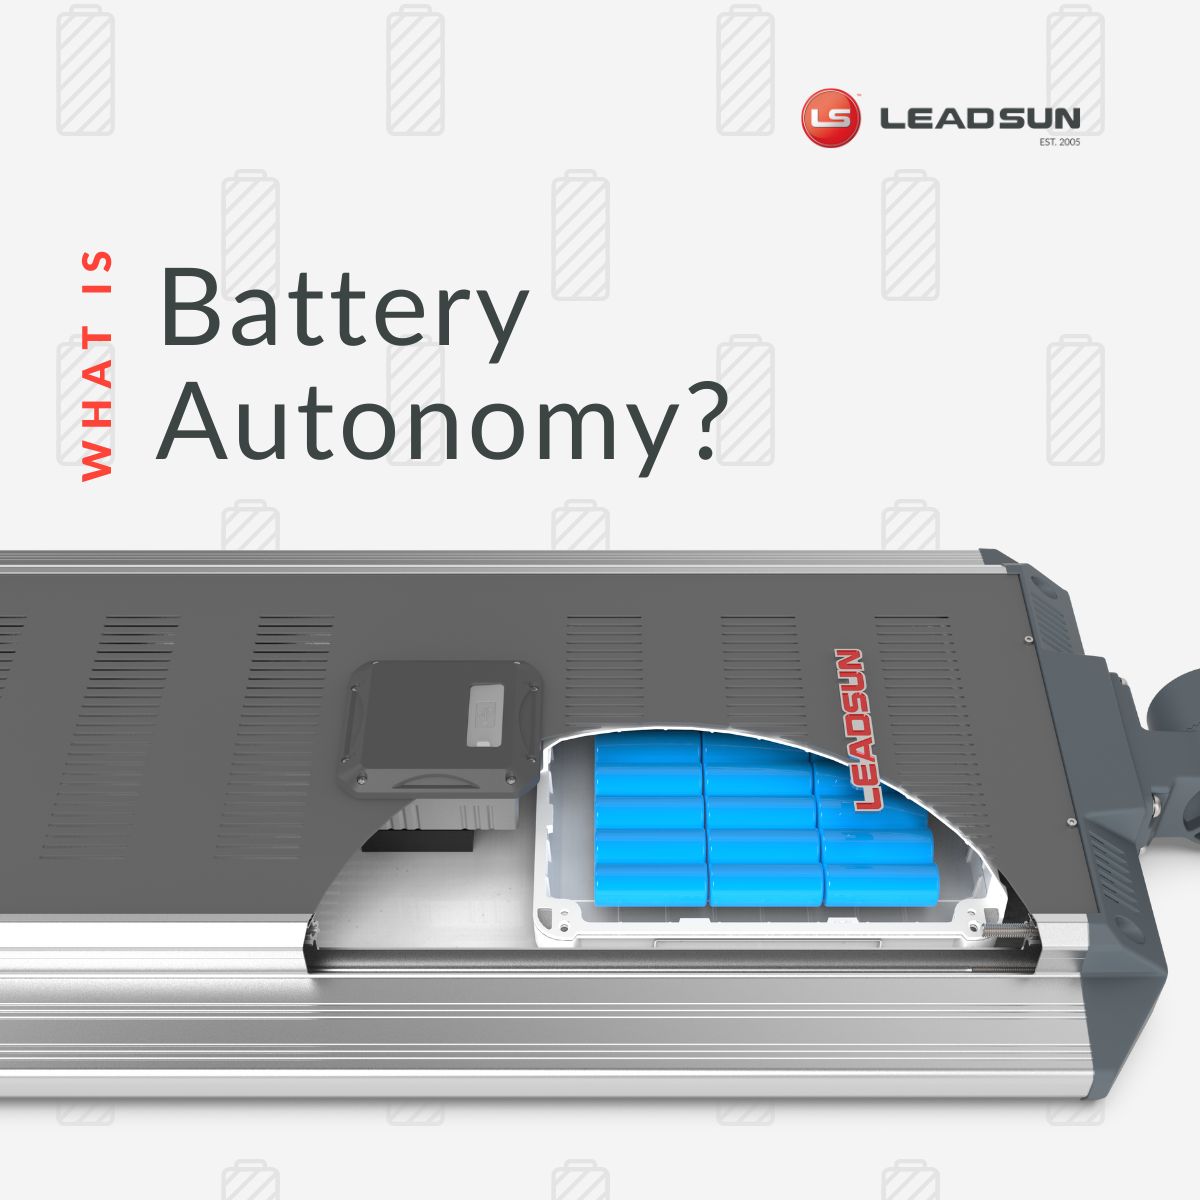 Battery Autonomy explained